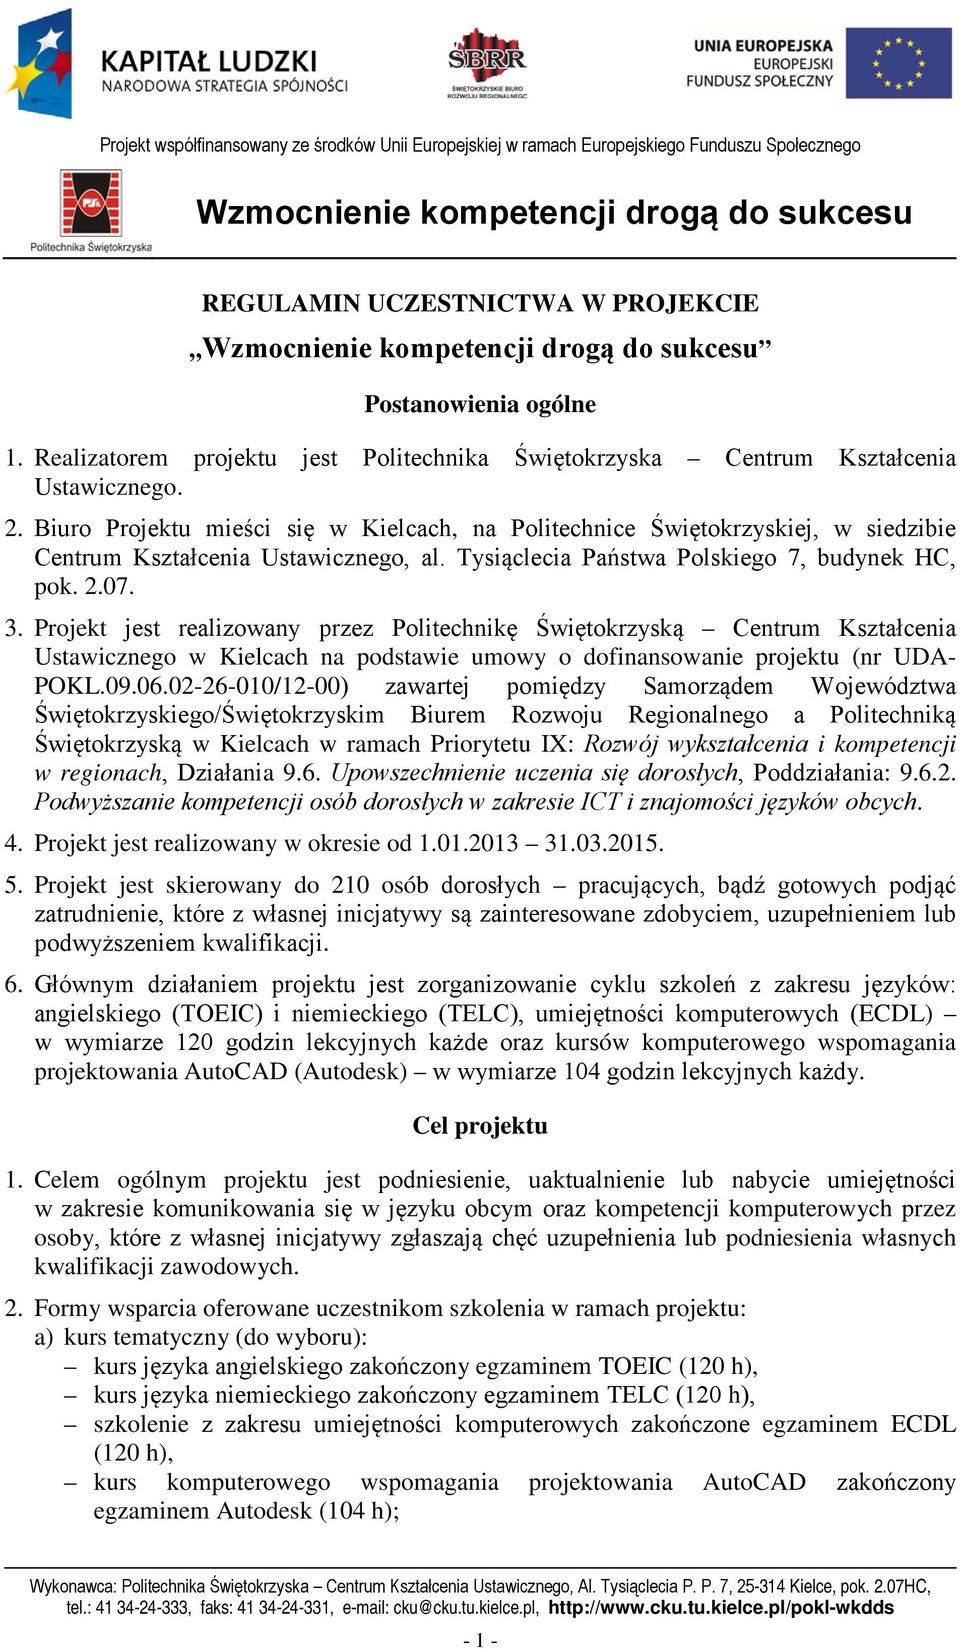 Projekt jest realizowany przez Politechnikę Świętokrzyską Centrum Kształcenia Ustawicznego w Kielcach na podstawie umowy o dofinansowanie projektu (nr UDA- POKL.09.06.